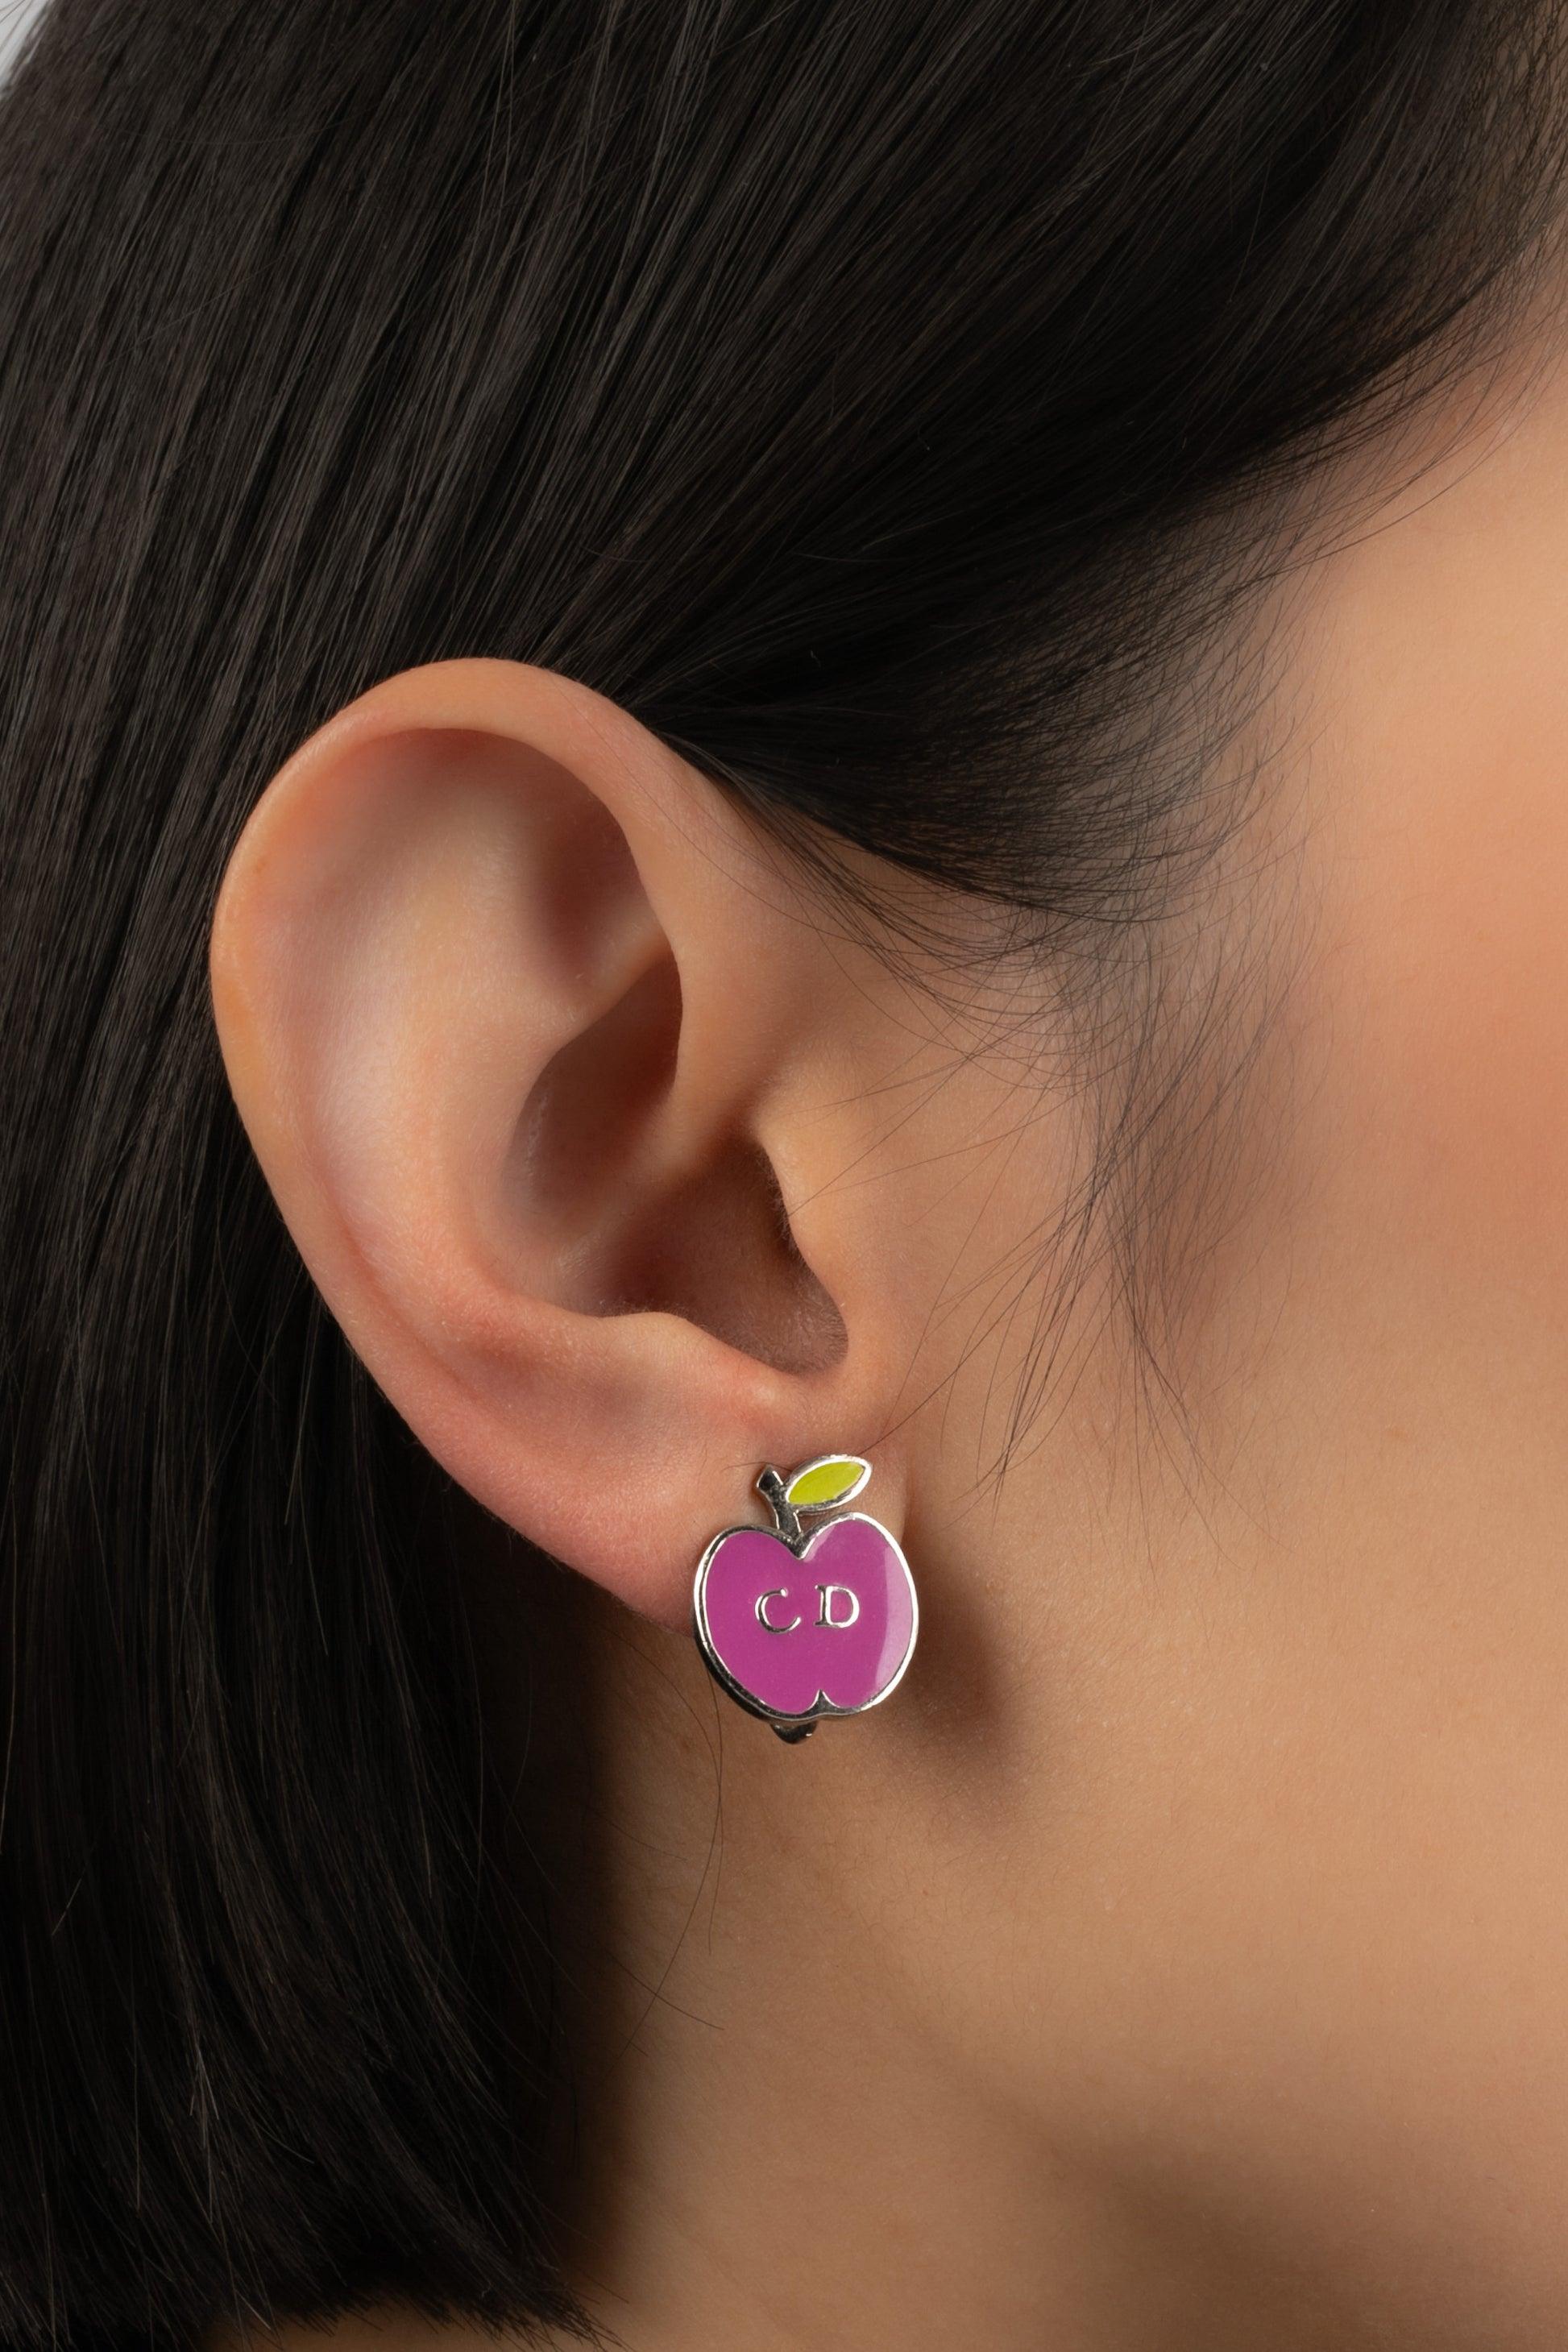 Dior - Ohrringe aus silbernem Metall mit Emaille.

Zusätzliche Informationen:
Zustand: Sehr guter Zustand
Abmessungen: Höhe: 2.2 cm

Referenz des Sellers: BO227